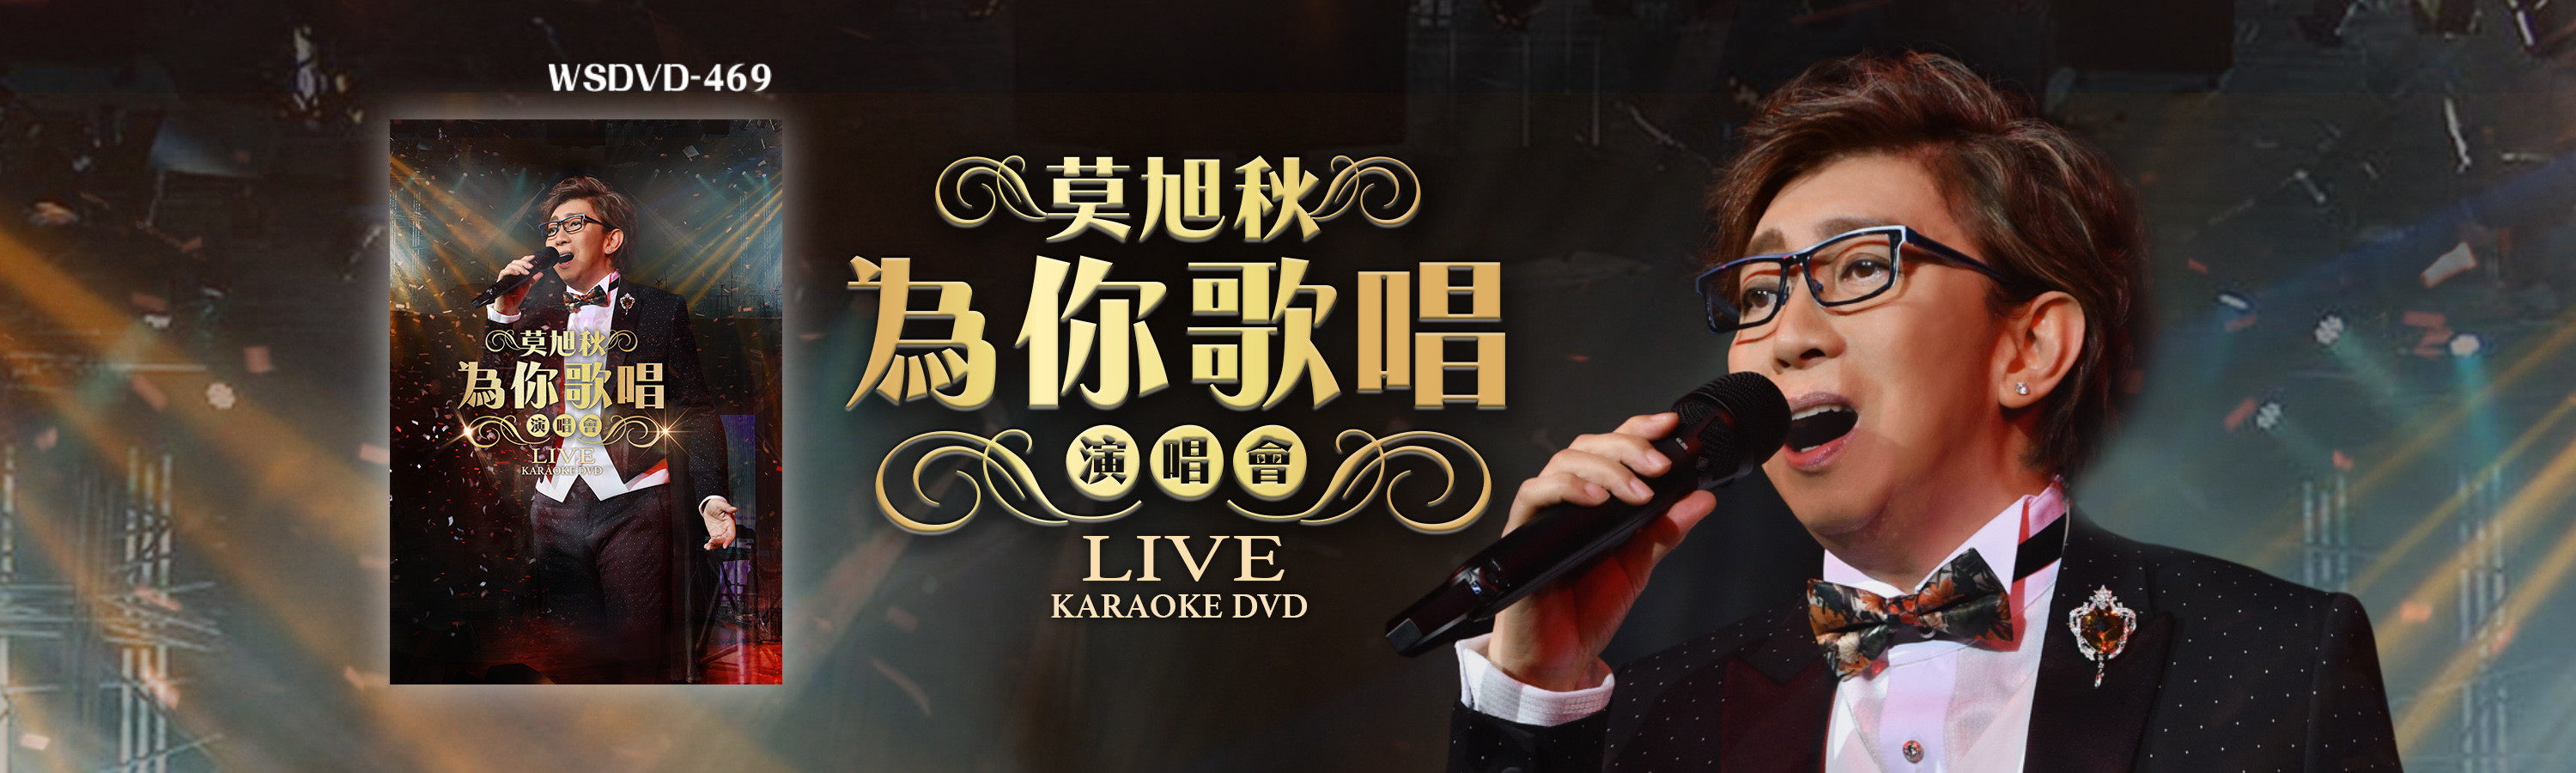 莫旭秋 - 為你歌唱演唱會 Live Karaoke DVD